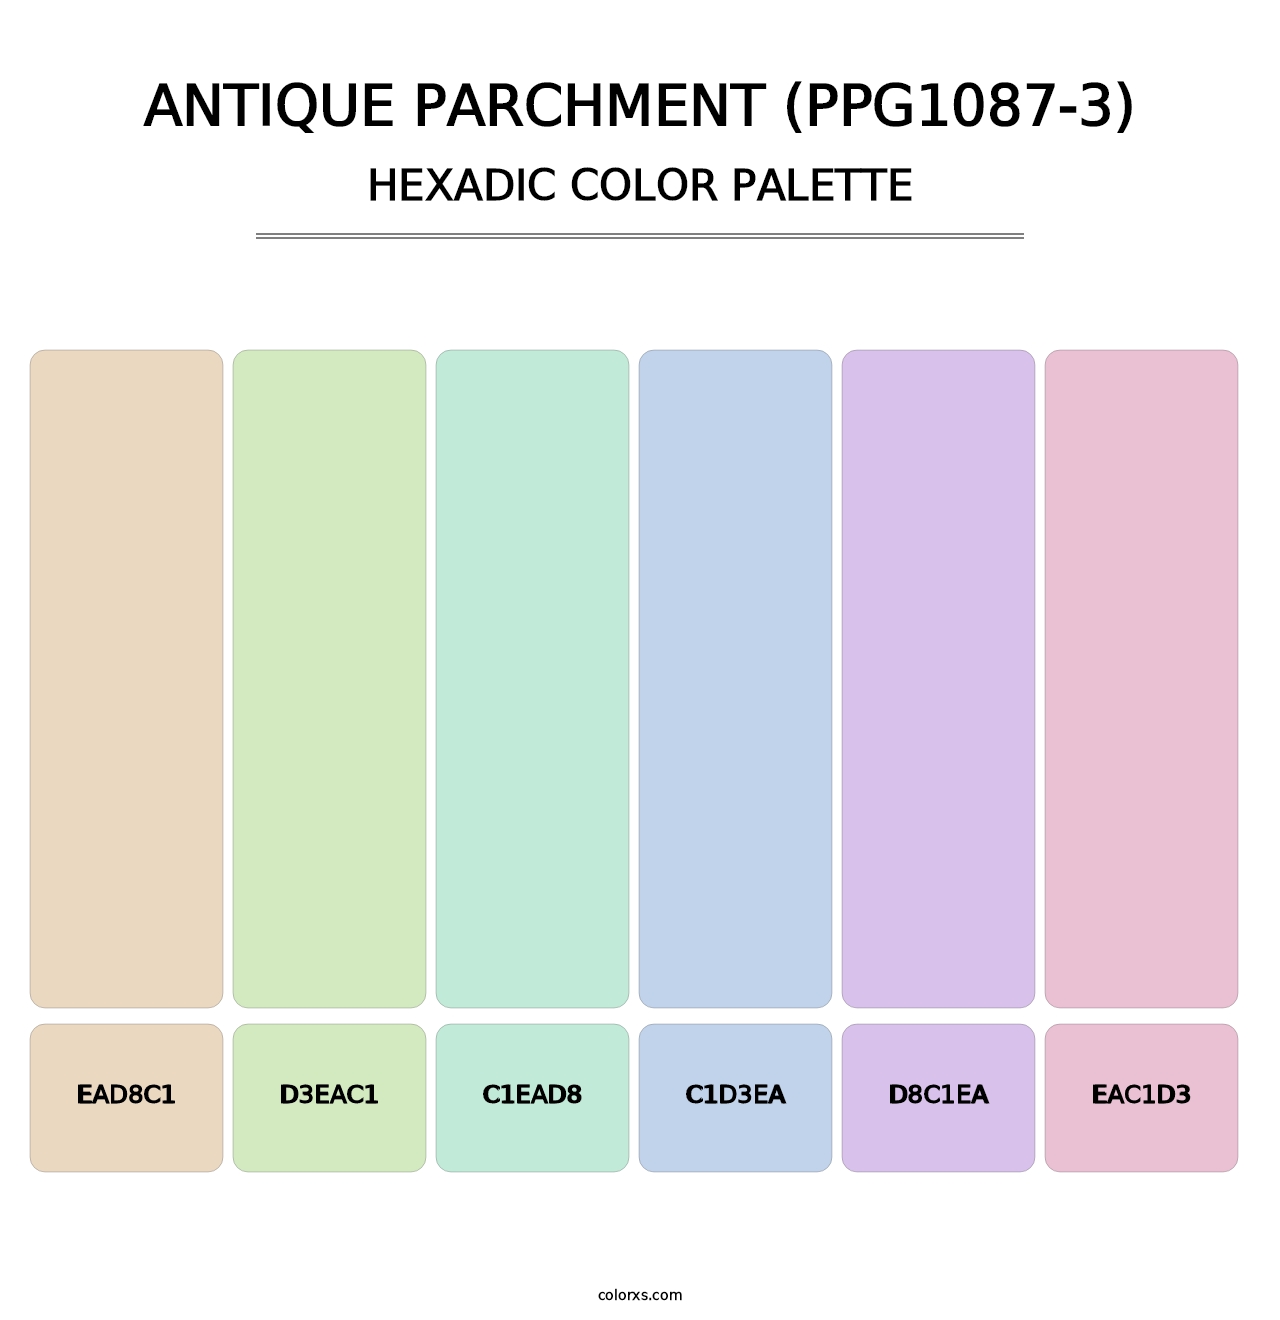 Antique Parchment (PPG1087-3) - Hexadic Color Palette